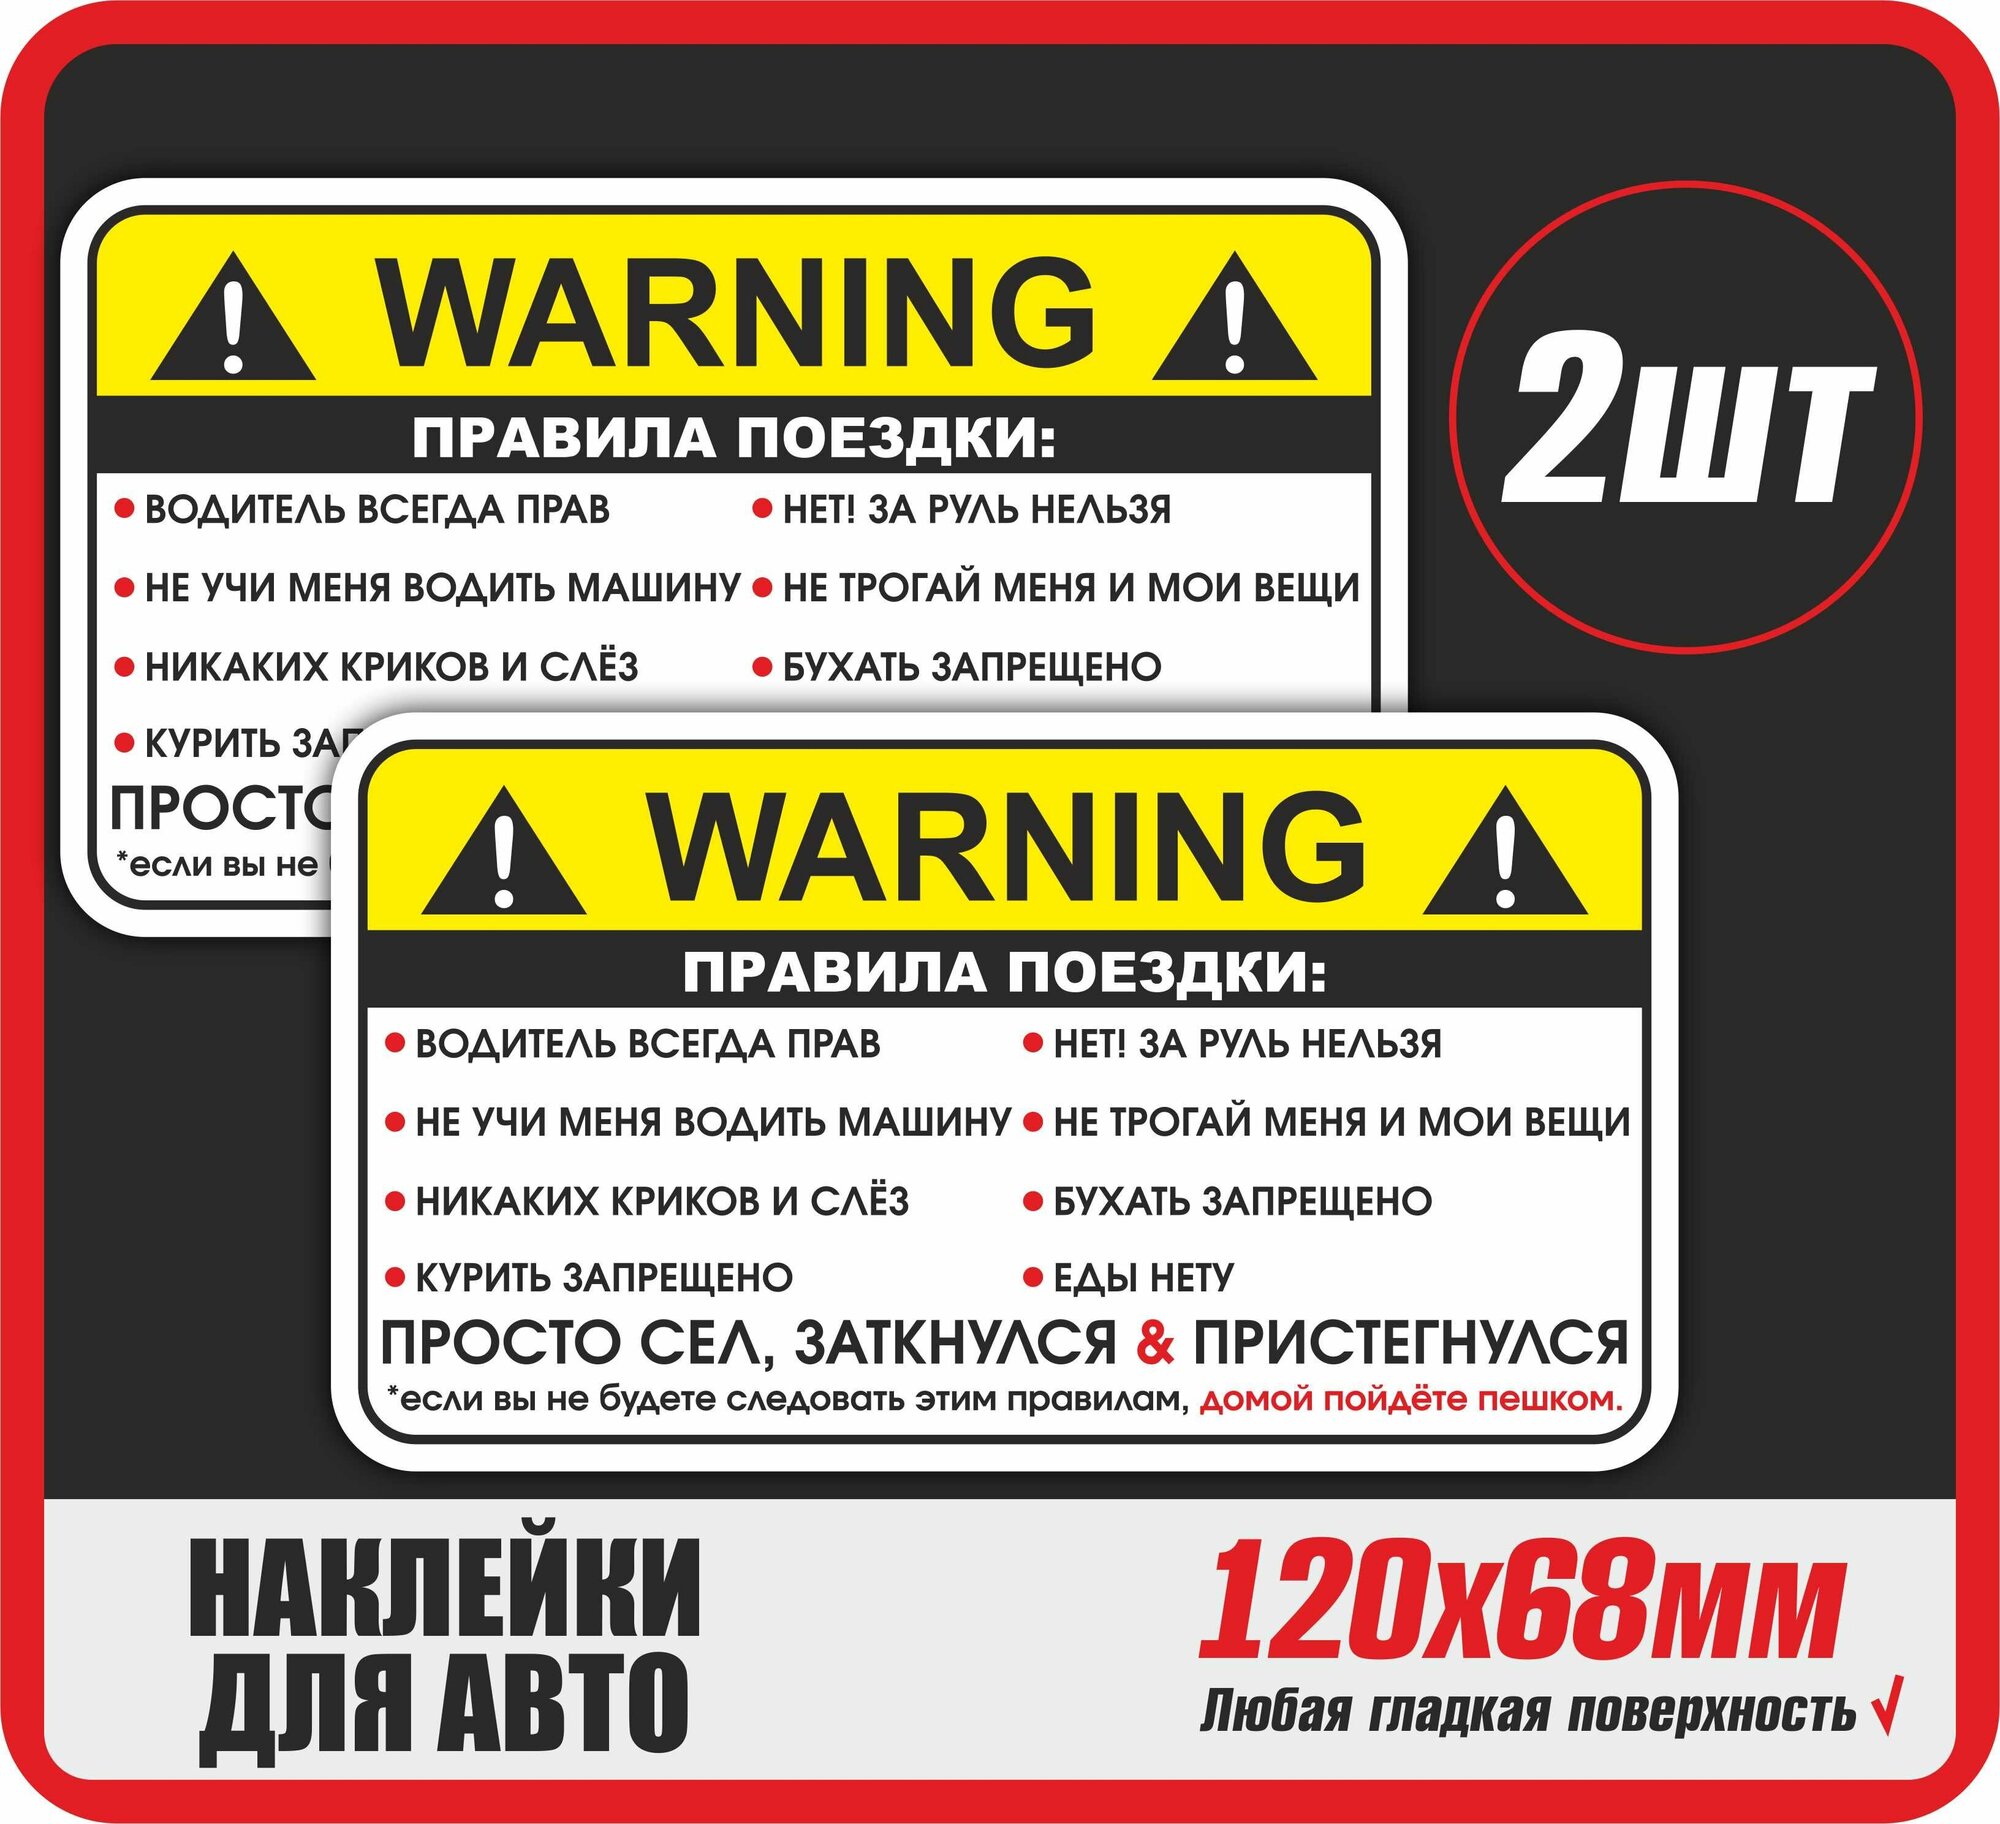 Наклейка на авто Warning Правила поездки пассажира 120х68 мм, 2шт в комплекте